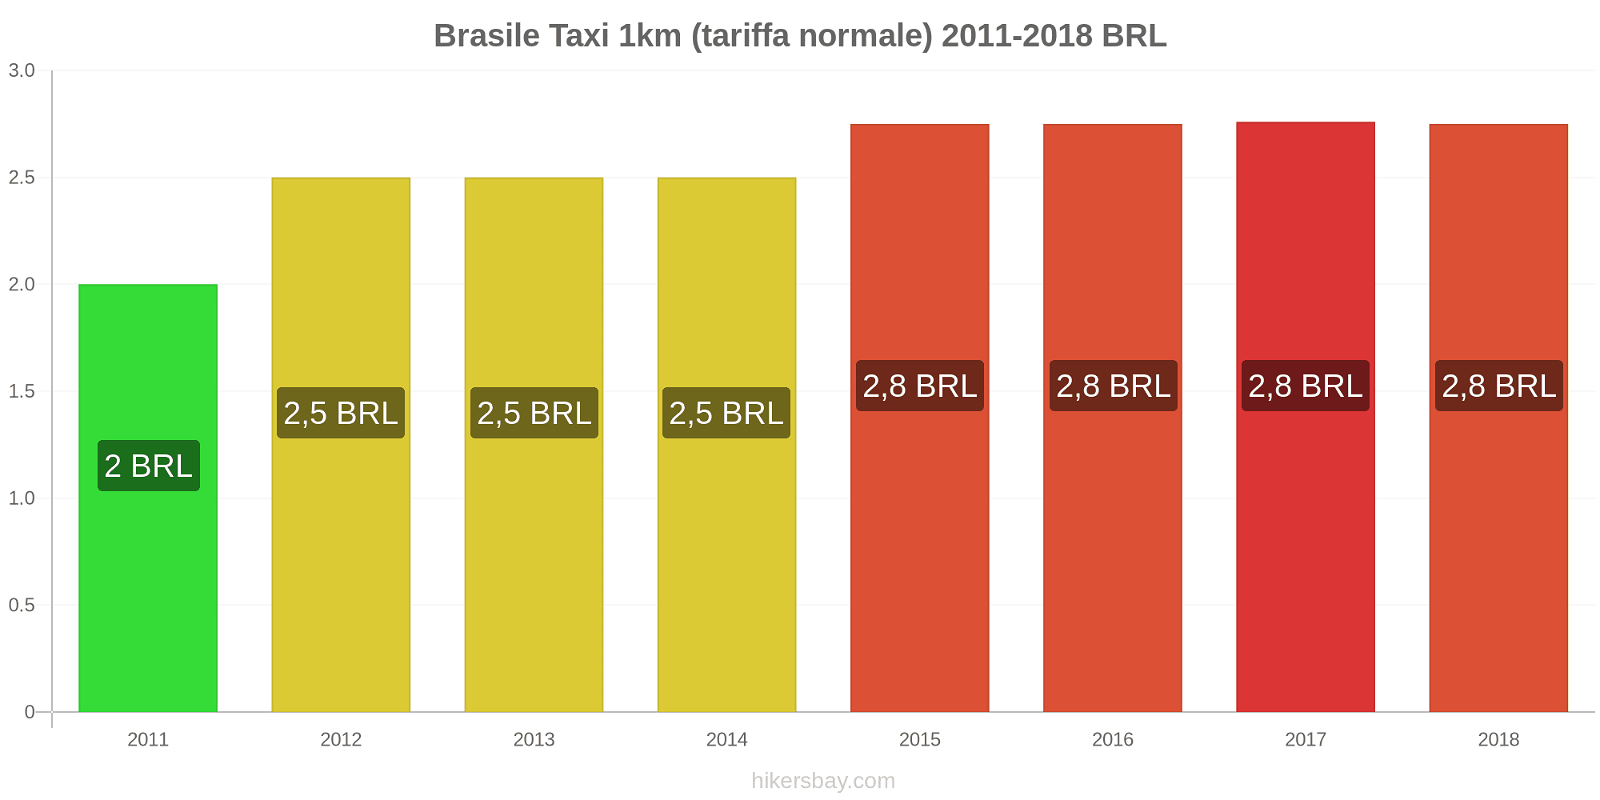 Brasile cambi di prezzo Taxi 1km (tariffa normale) hikersbay.com